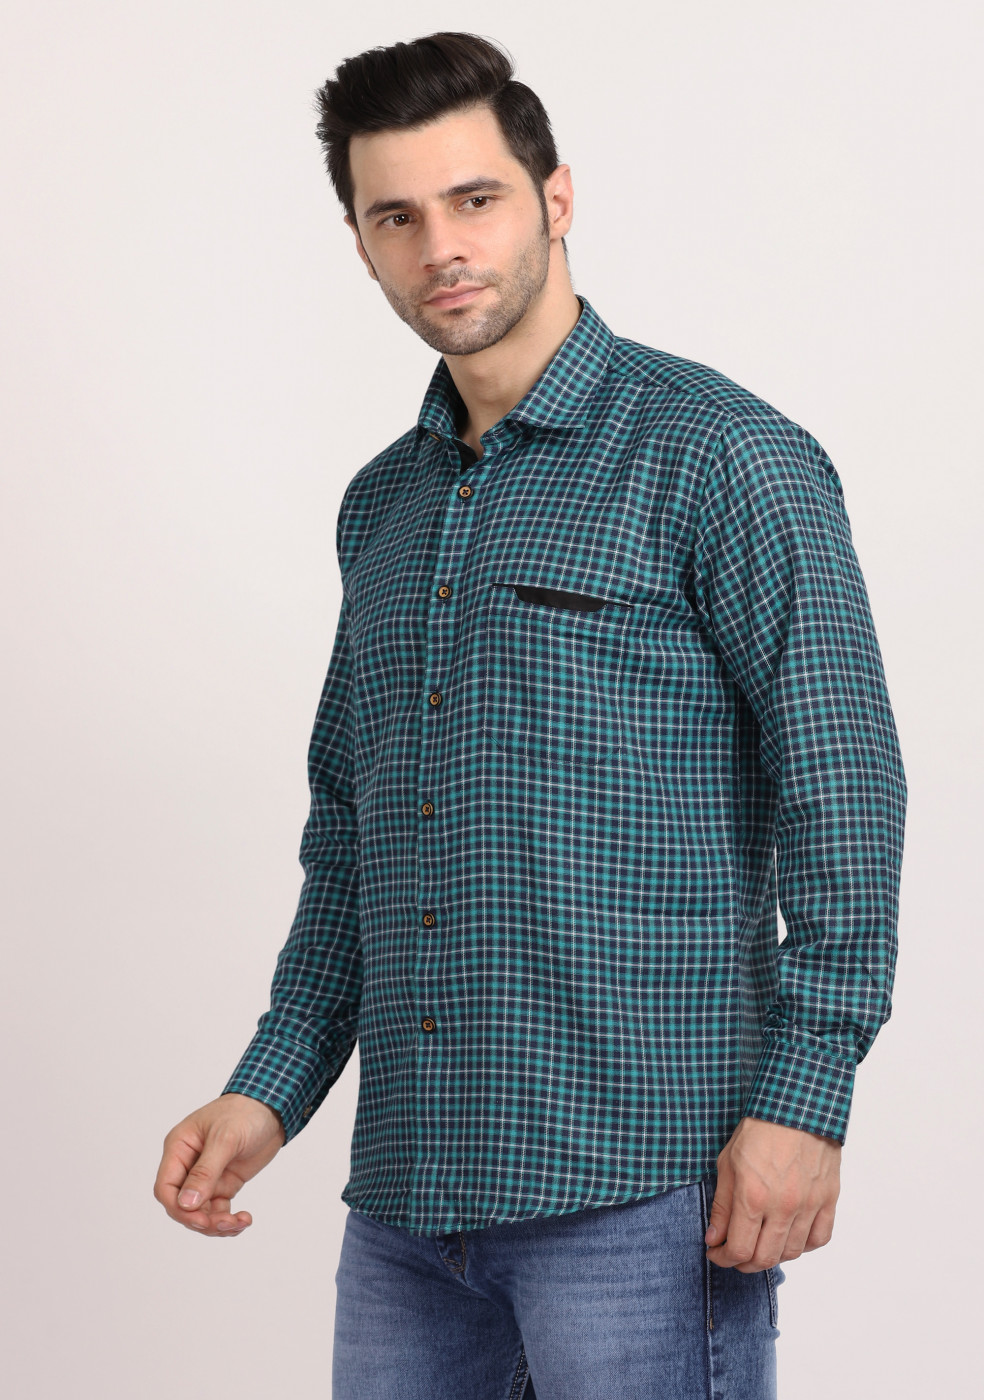 ASHTOM Light Green Small Check Regular Fit Cotton Shirt For Men